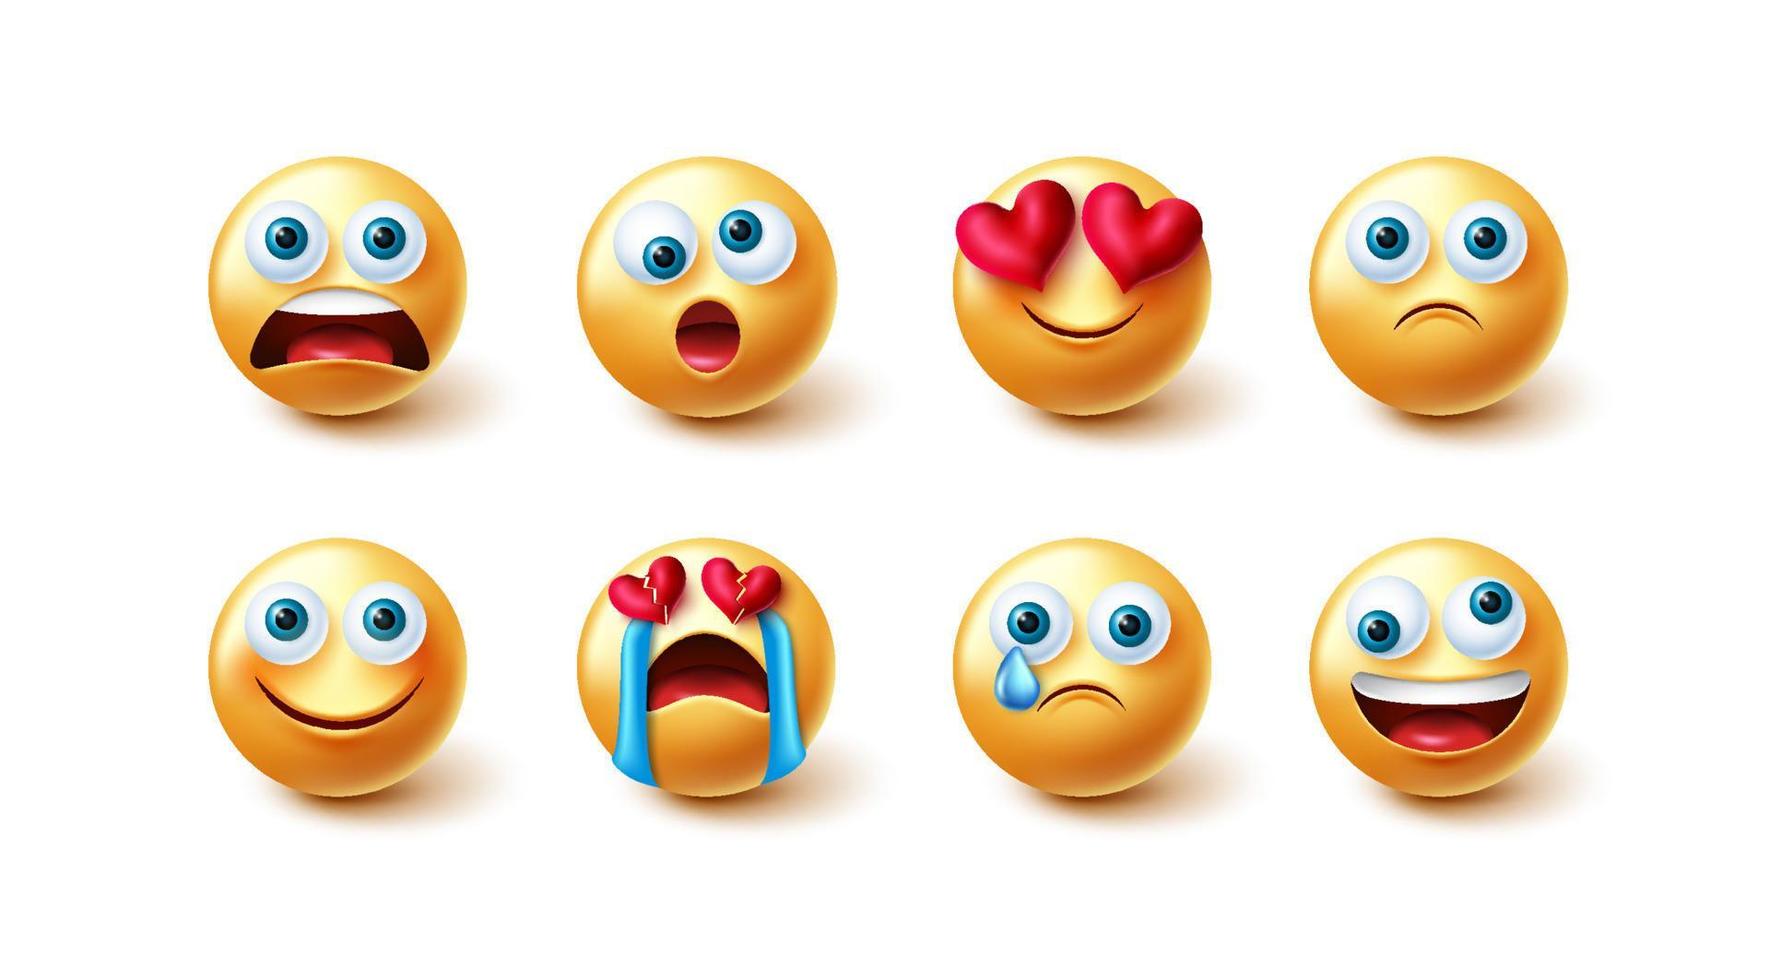 insieme di vettore di emoticon emoji. Emoticon 3d in design grafico 3d dal cuore spezzato scioccato, divertente e triste per il design della collezione di emoji di facce gialle carine e pazze. illustrazione vettoriale.